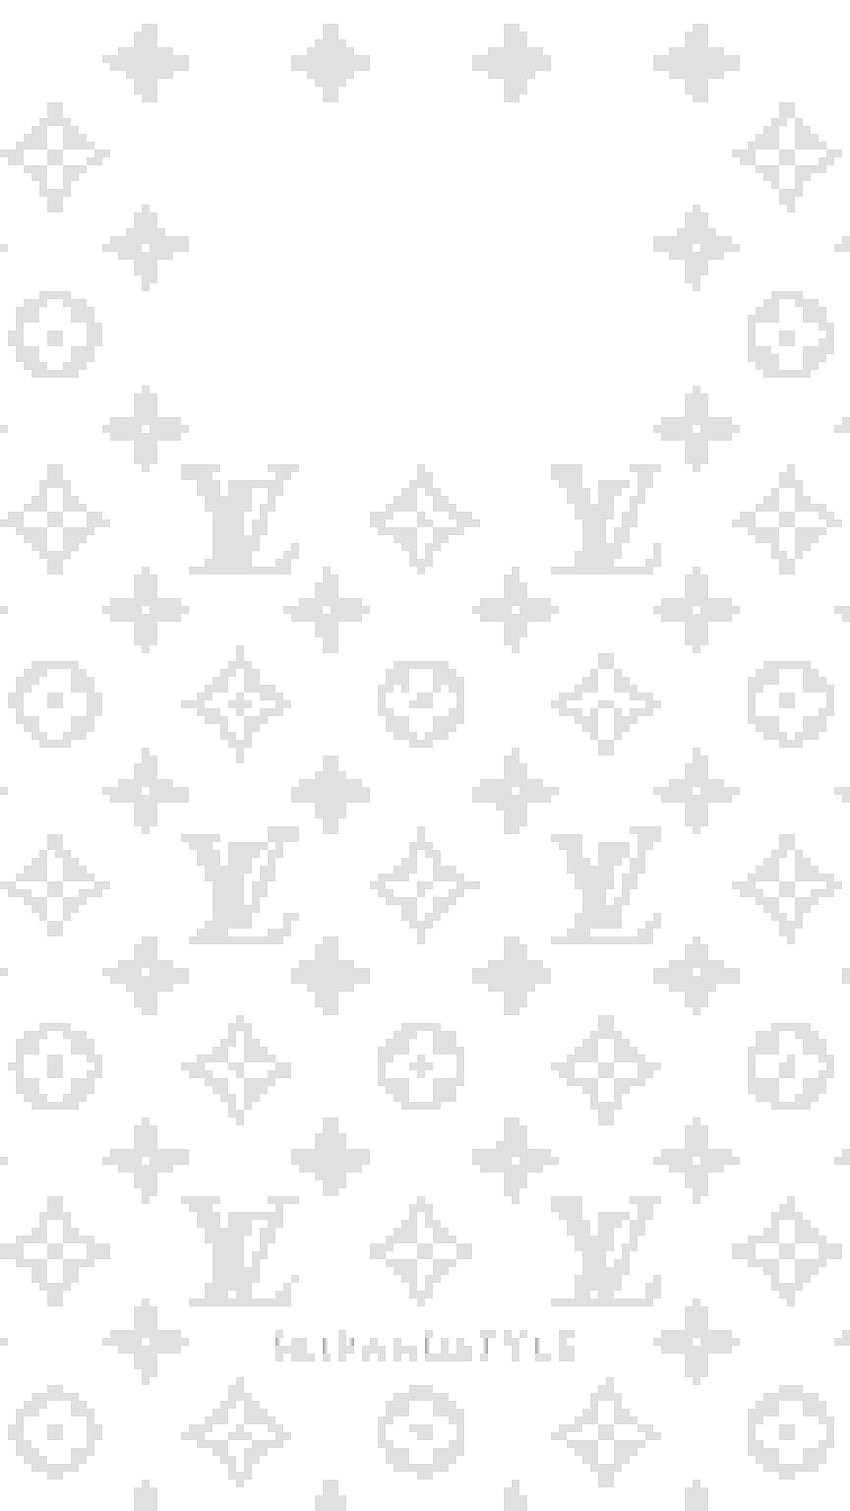 Louis Vuitton BW Mac wallpaper